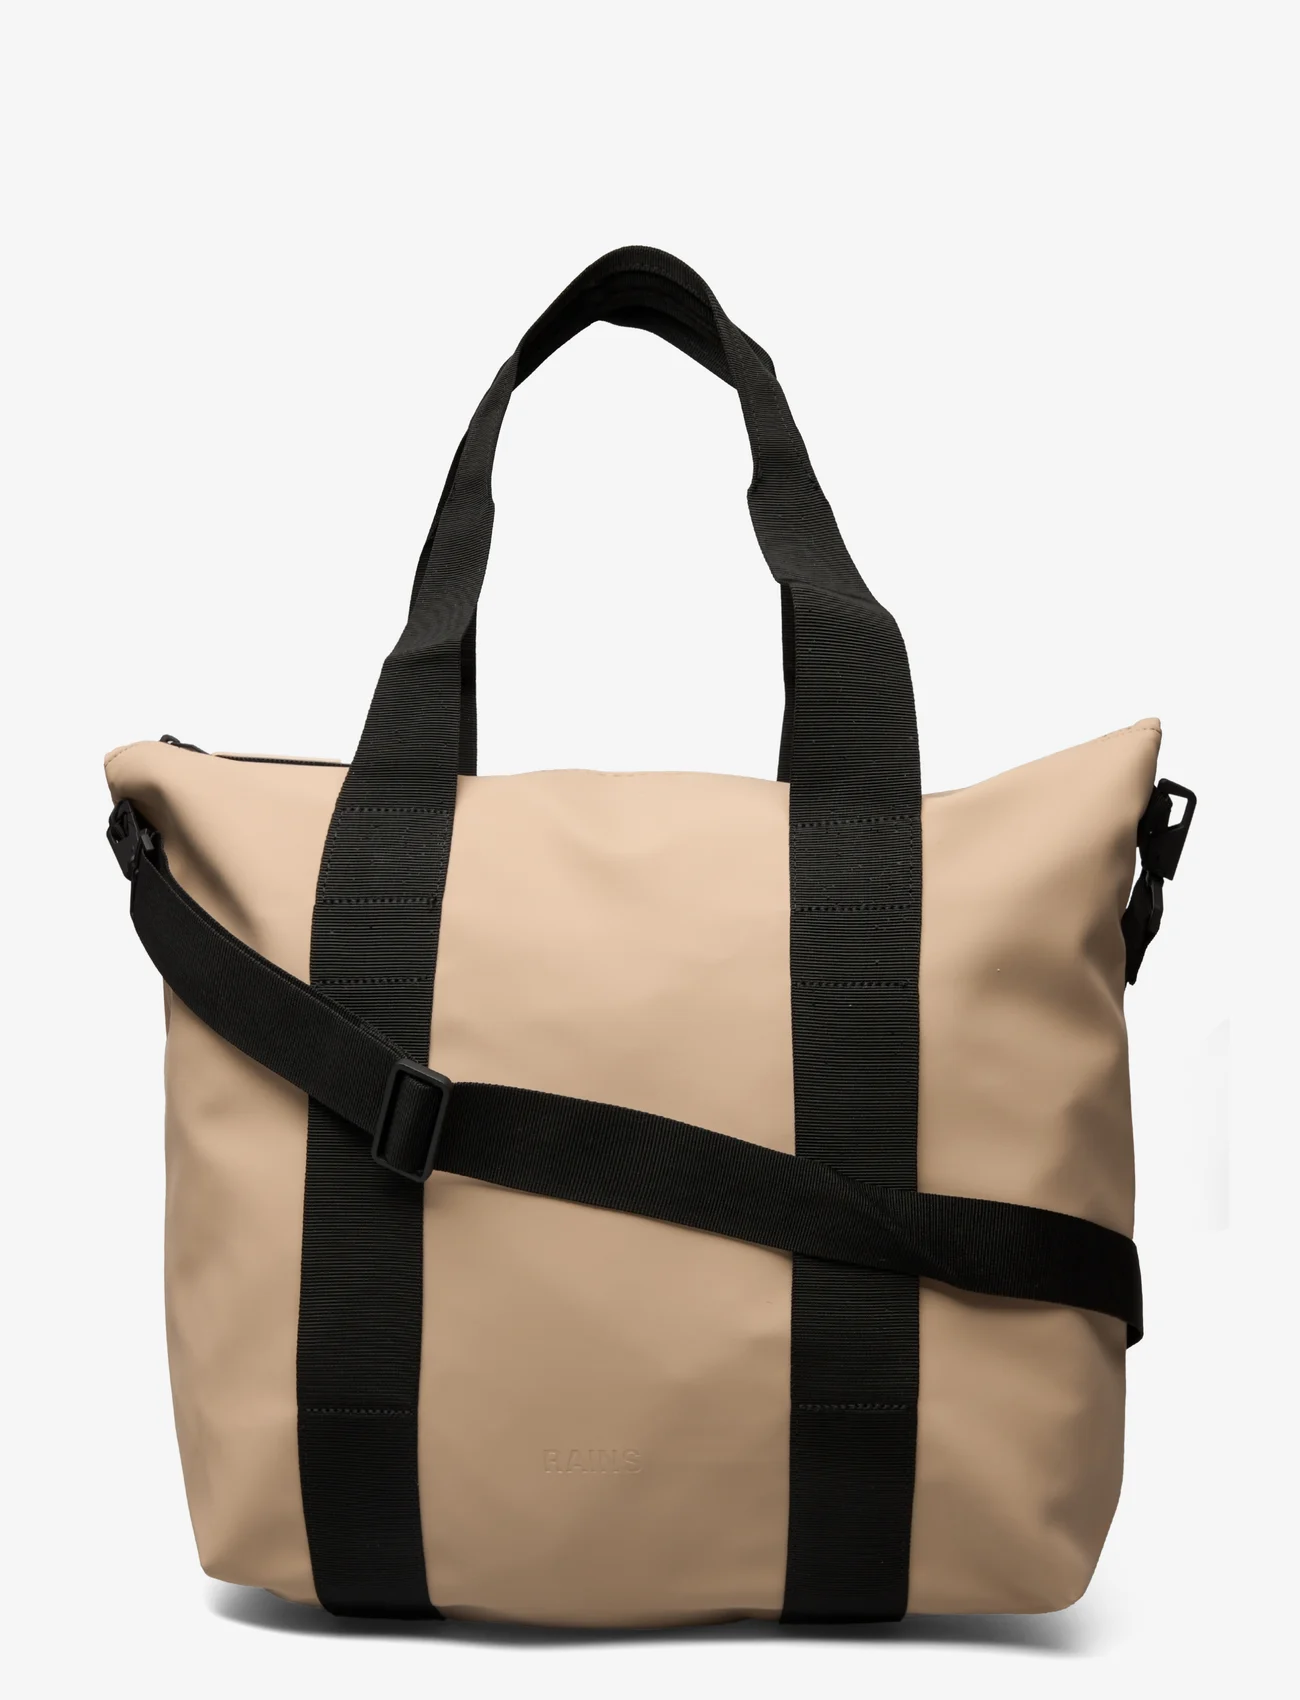 Rains - Tote Bag Mini W3 - schoudertassen - 24 sand - 0